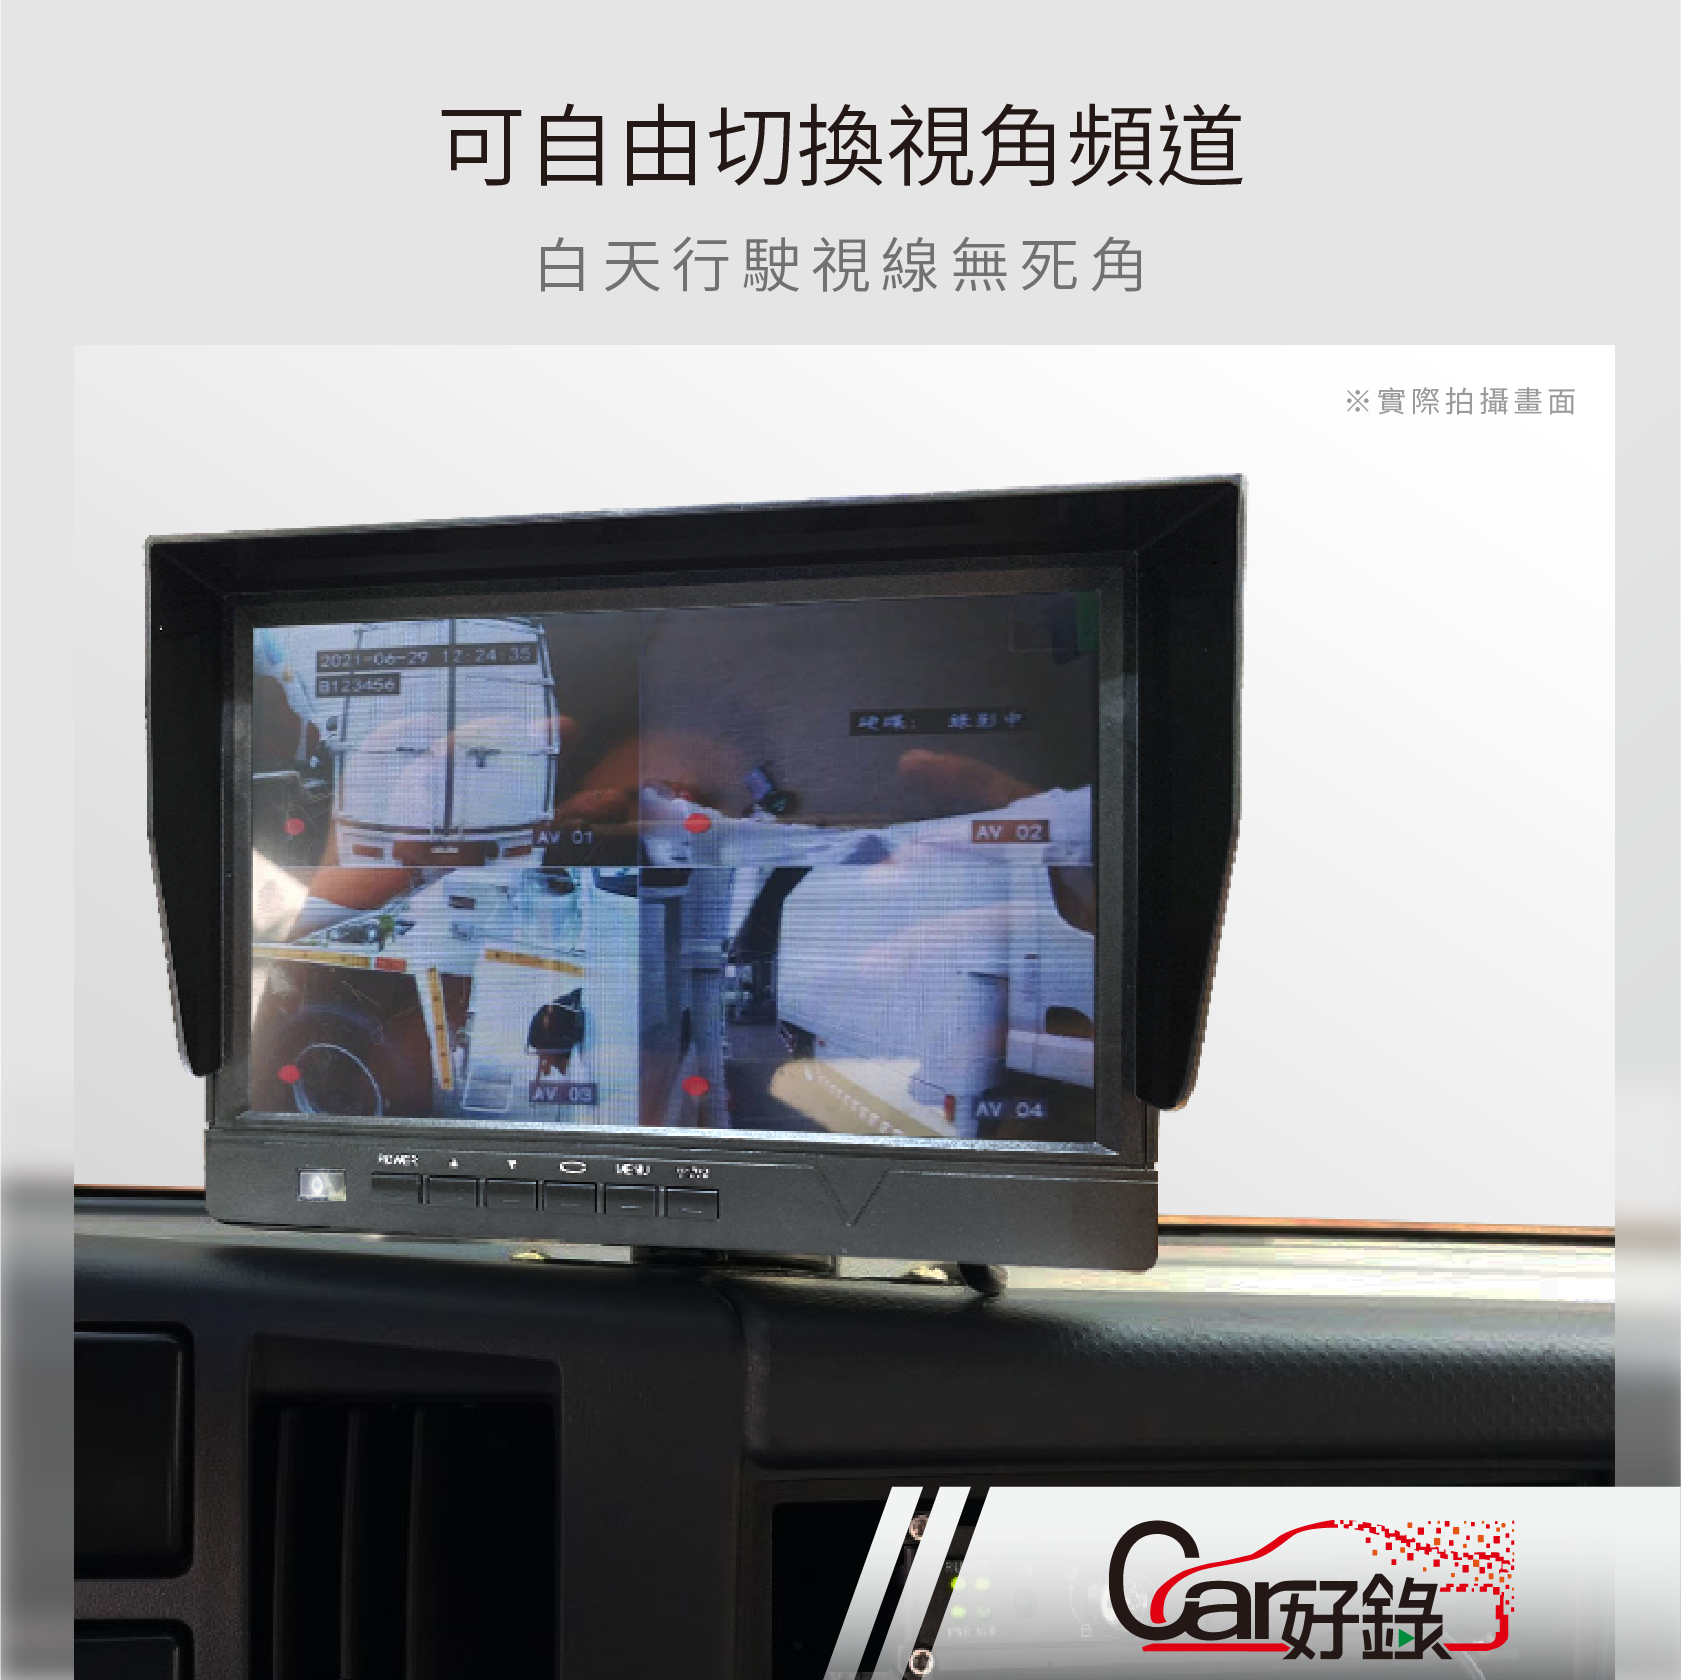 car好錄,LCD液晶螢幕,7901型號,9吋,白天行駛視線無死角